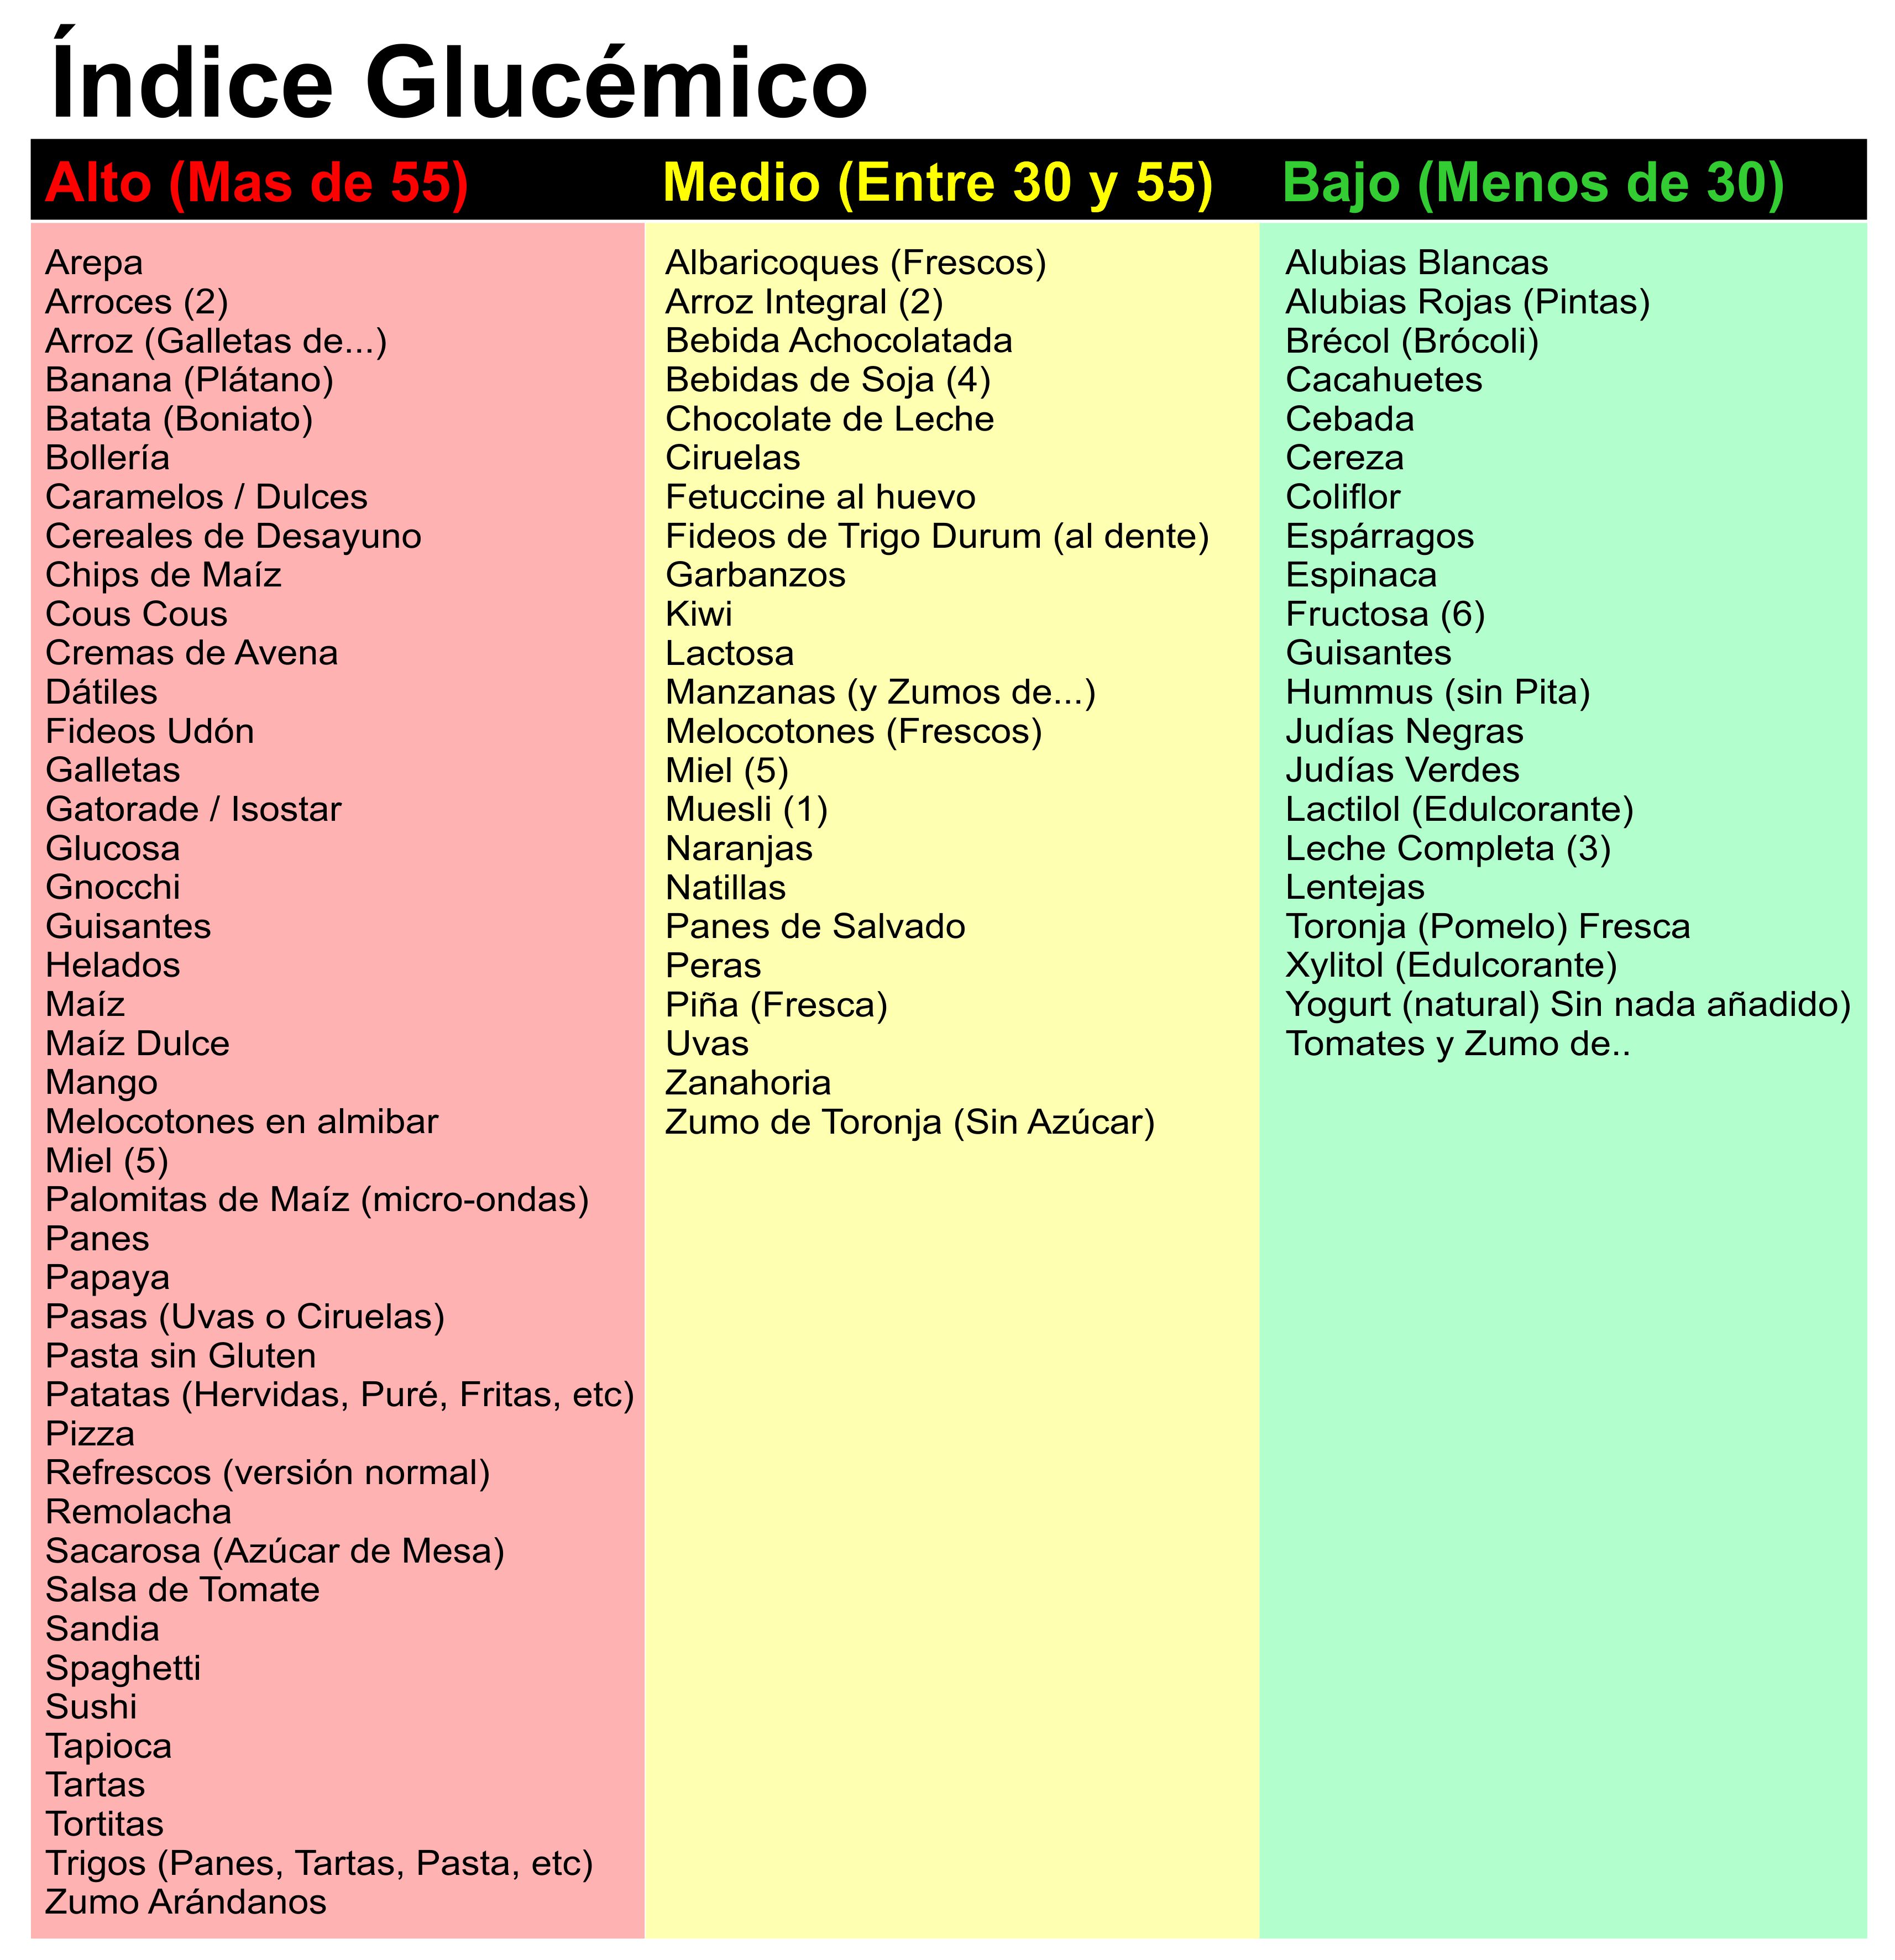 Alimentos con alto indice glucemico